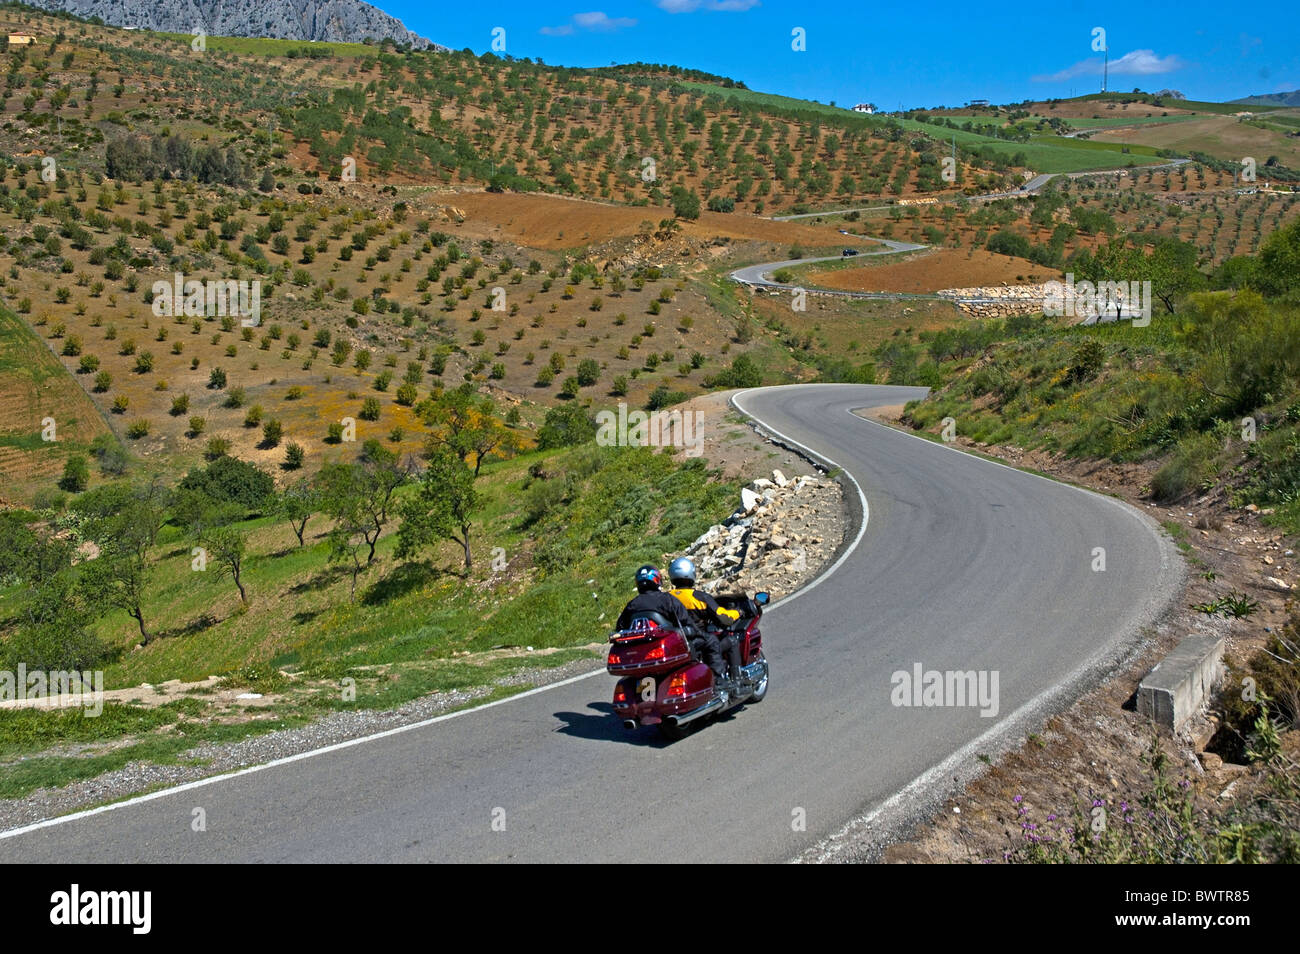 Andalousie, Espagne - moto à travers la campagne rurale pleine d'oliviers entre Alora et Antequera, Andalousie, espagne. Banque D'Images